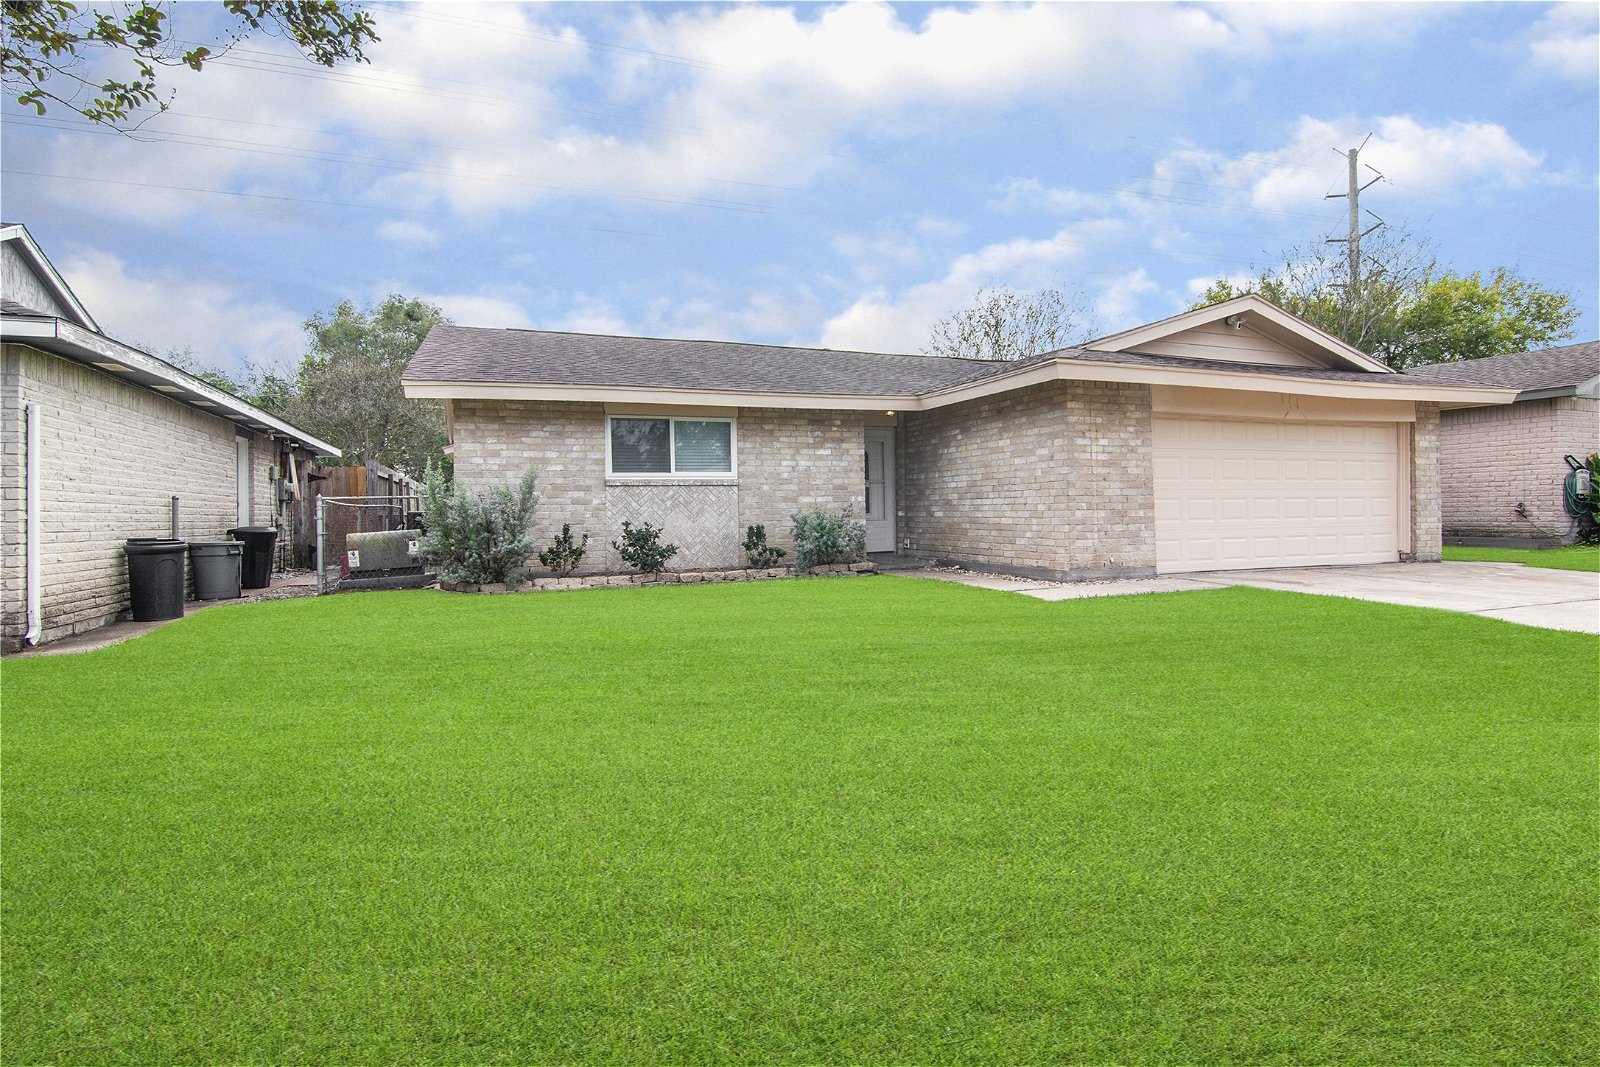 Real estate property located at 8514 Oakhaven, Harris, Brookglen Sec 02 R/P, La Porte, TX, US